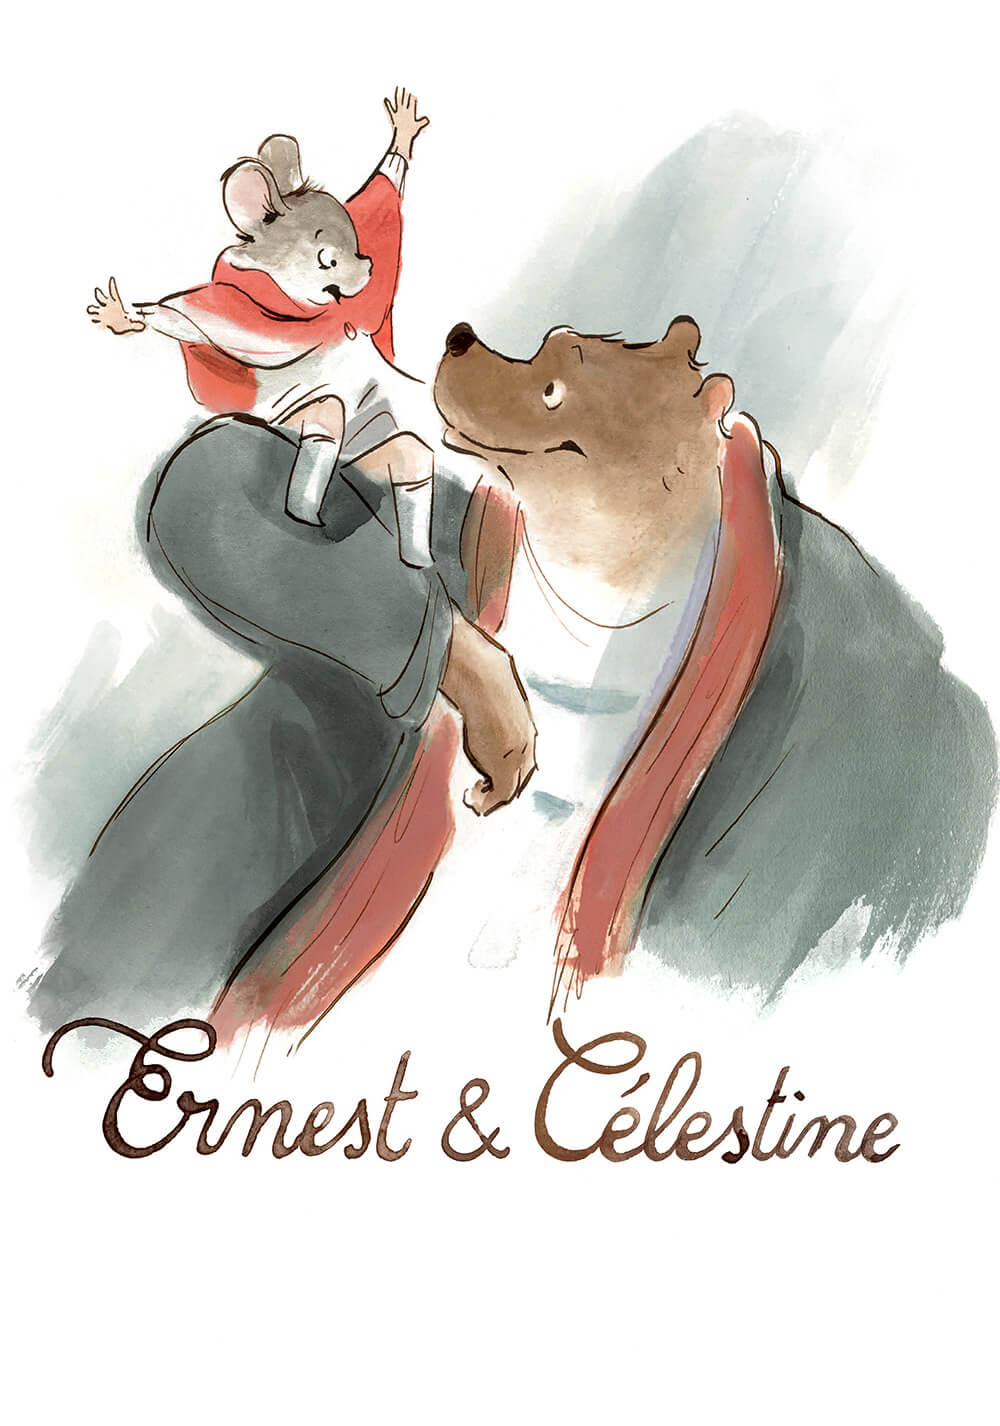 ارنست و سلستین (Ernest & Celestine)